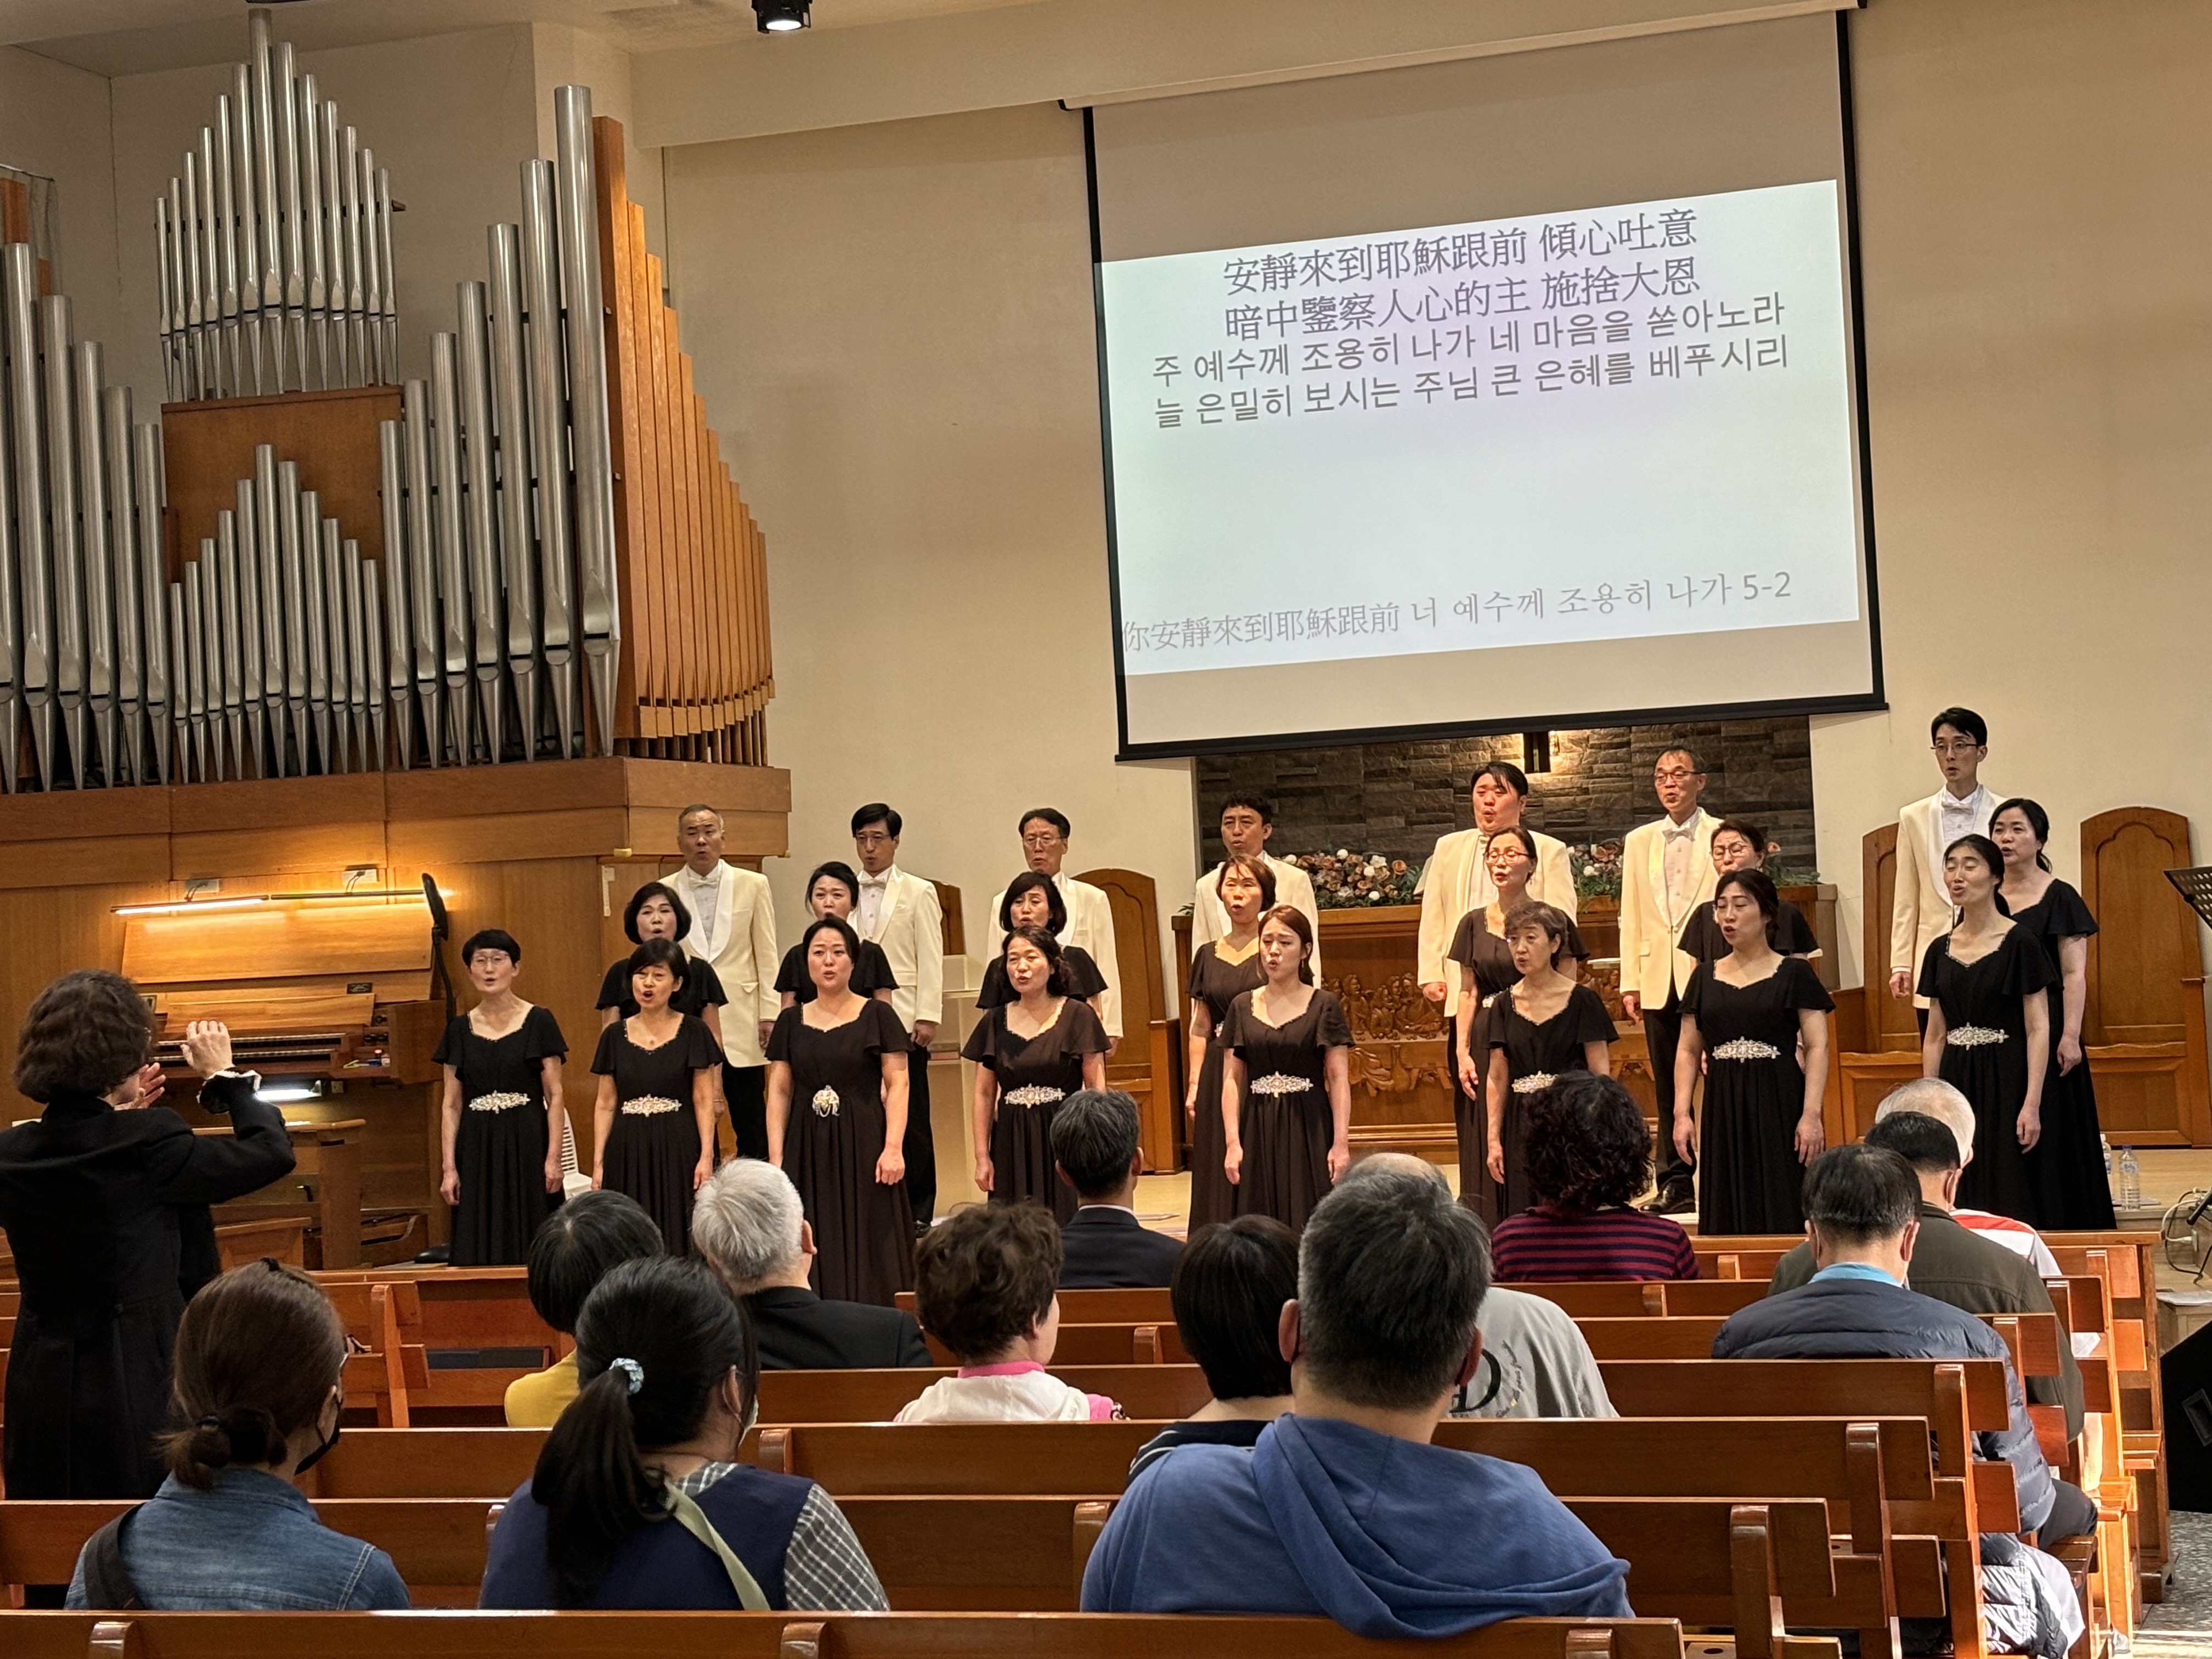 合唱團演唱韓國聖詩。(圖/李容珍攝影)